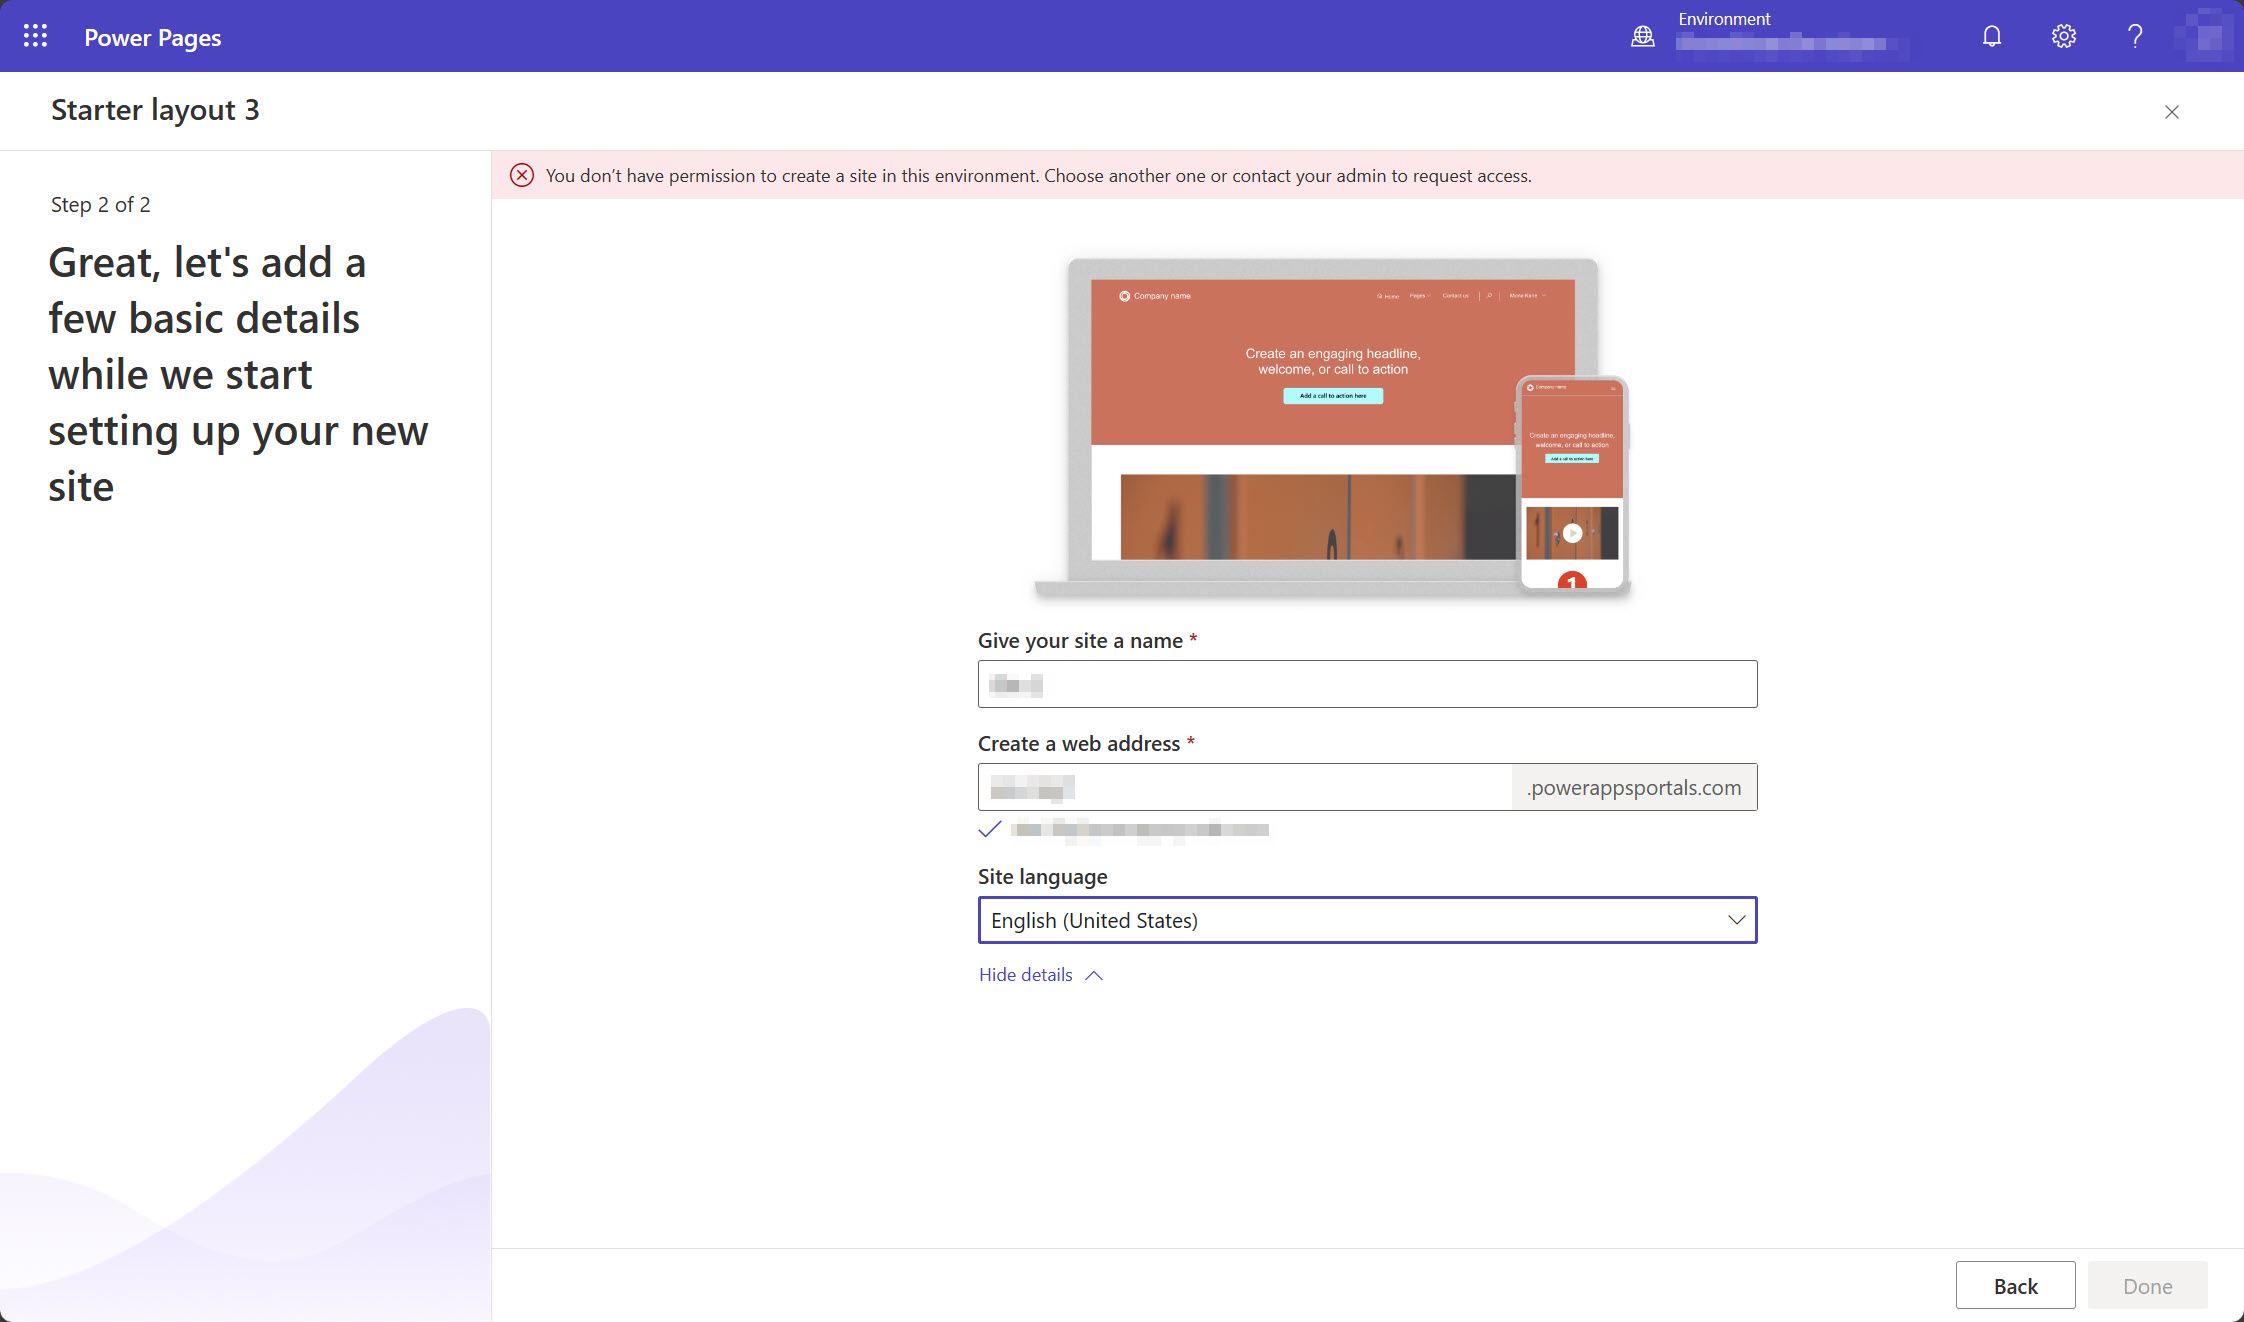 Снимок экрана студии дизайна Power Pages, на котором отображается сообщение о том, что у пользователя нет разрешений на создание сайта в выбранной среде.